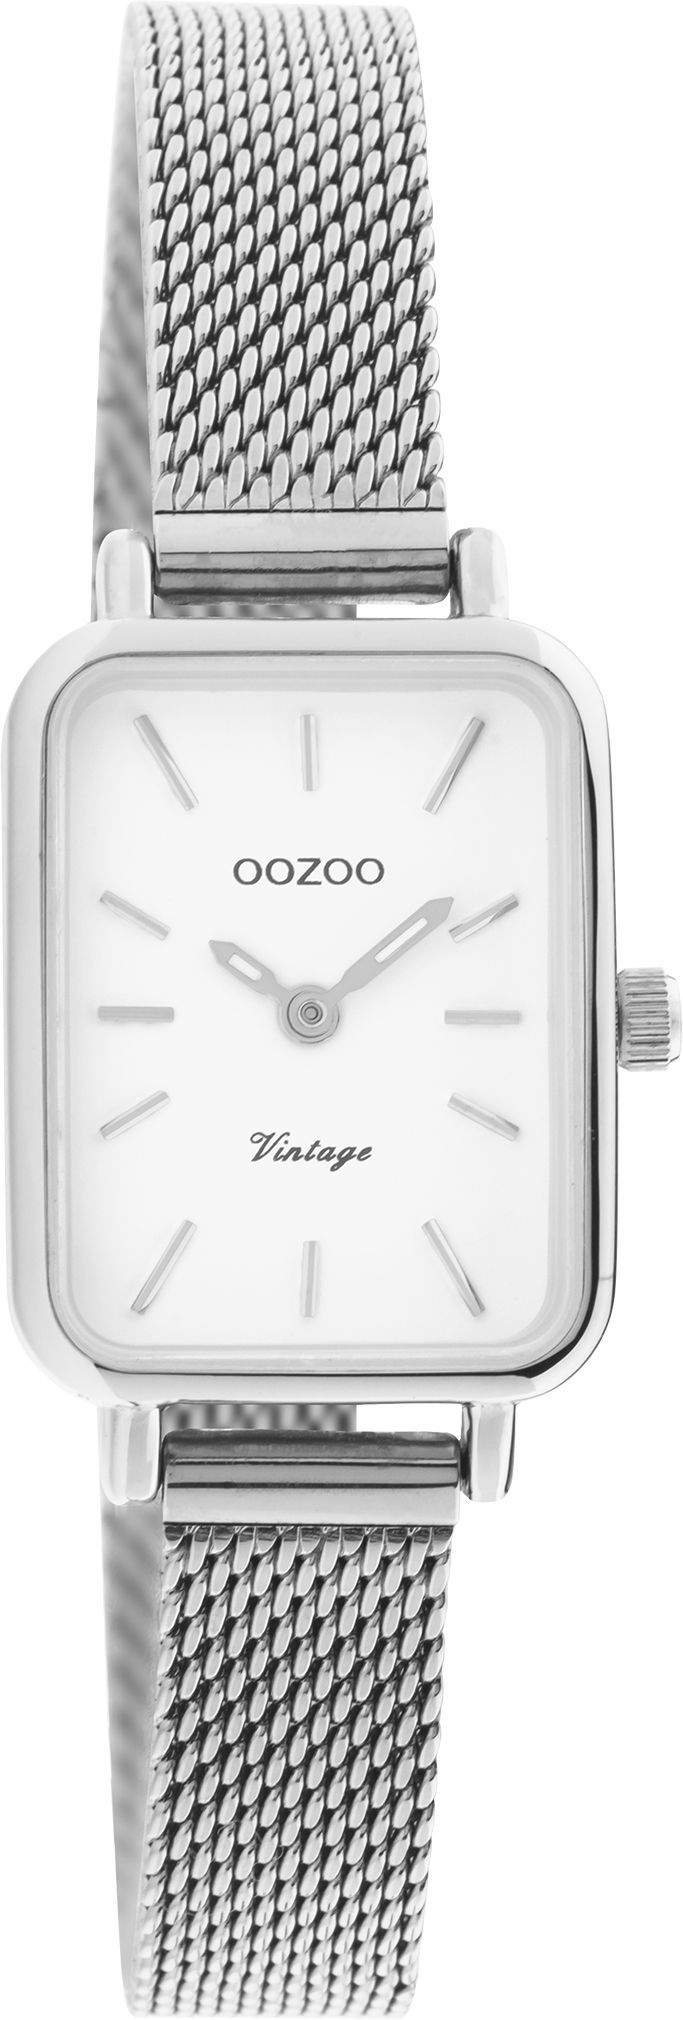 OOZOO Vintage C20266 σε χρώμα ασημί